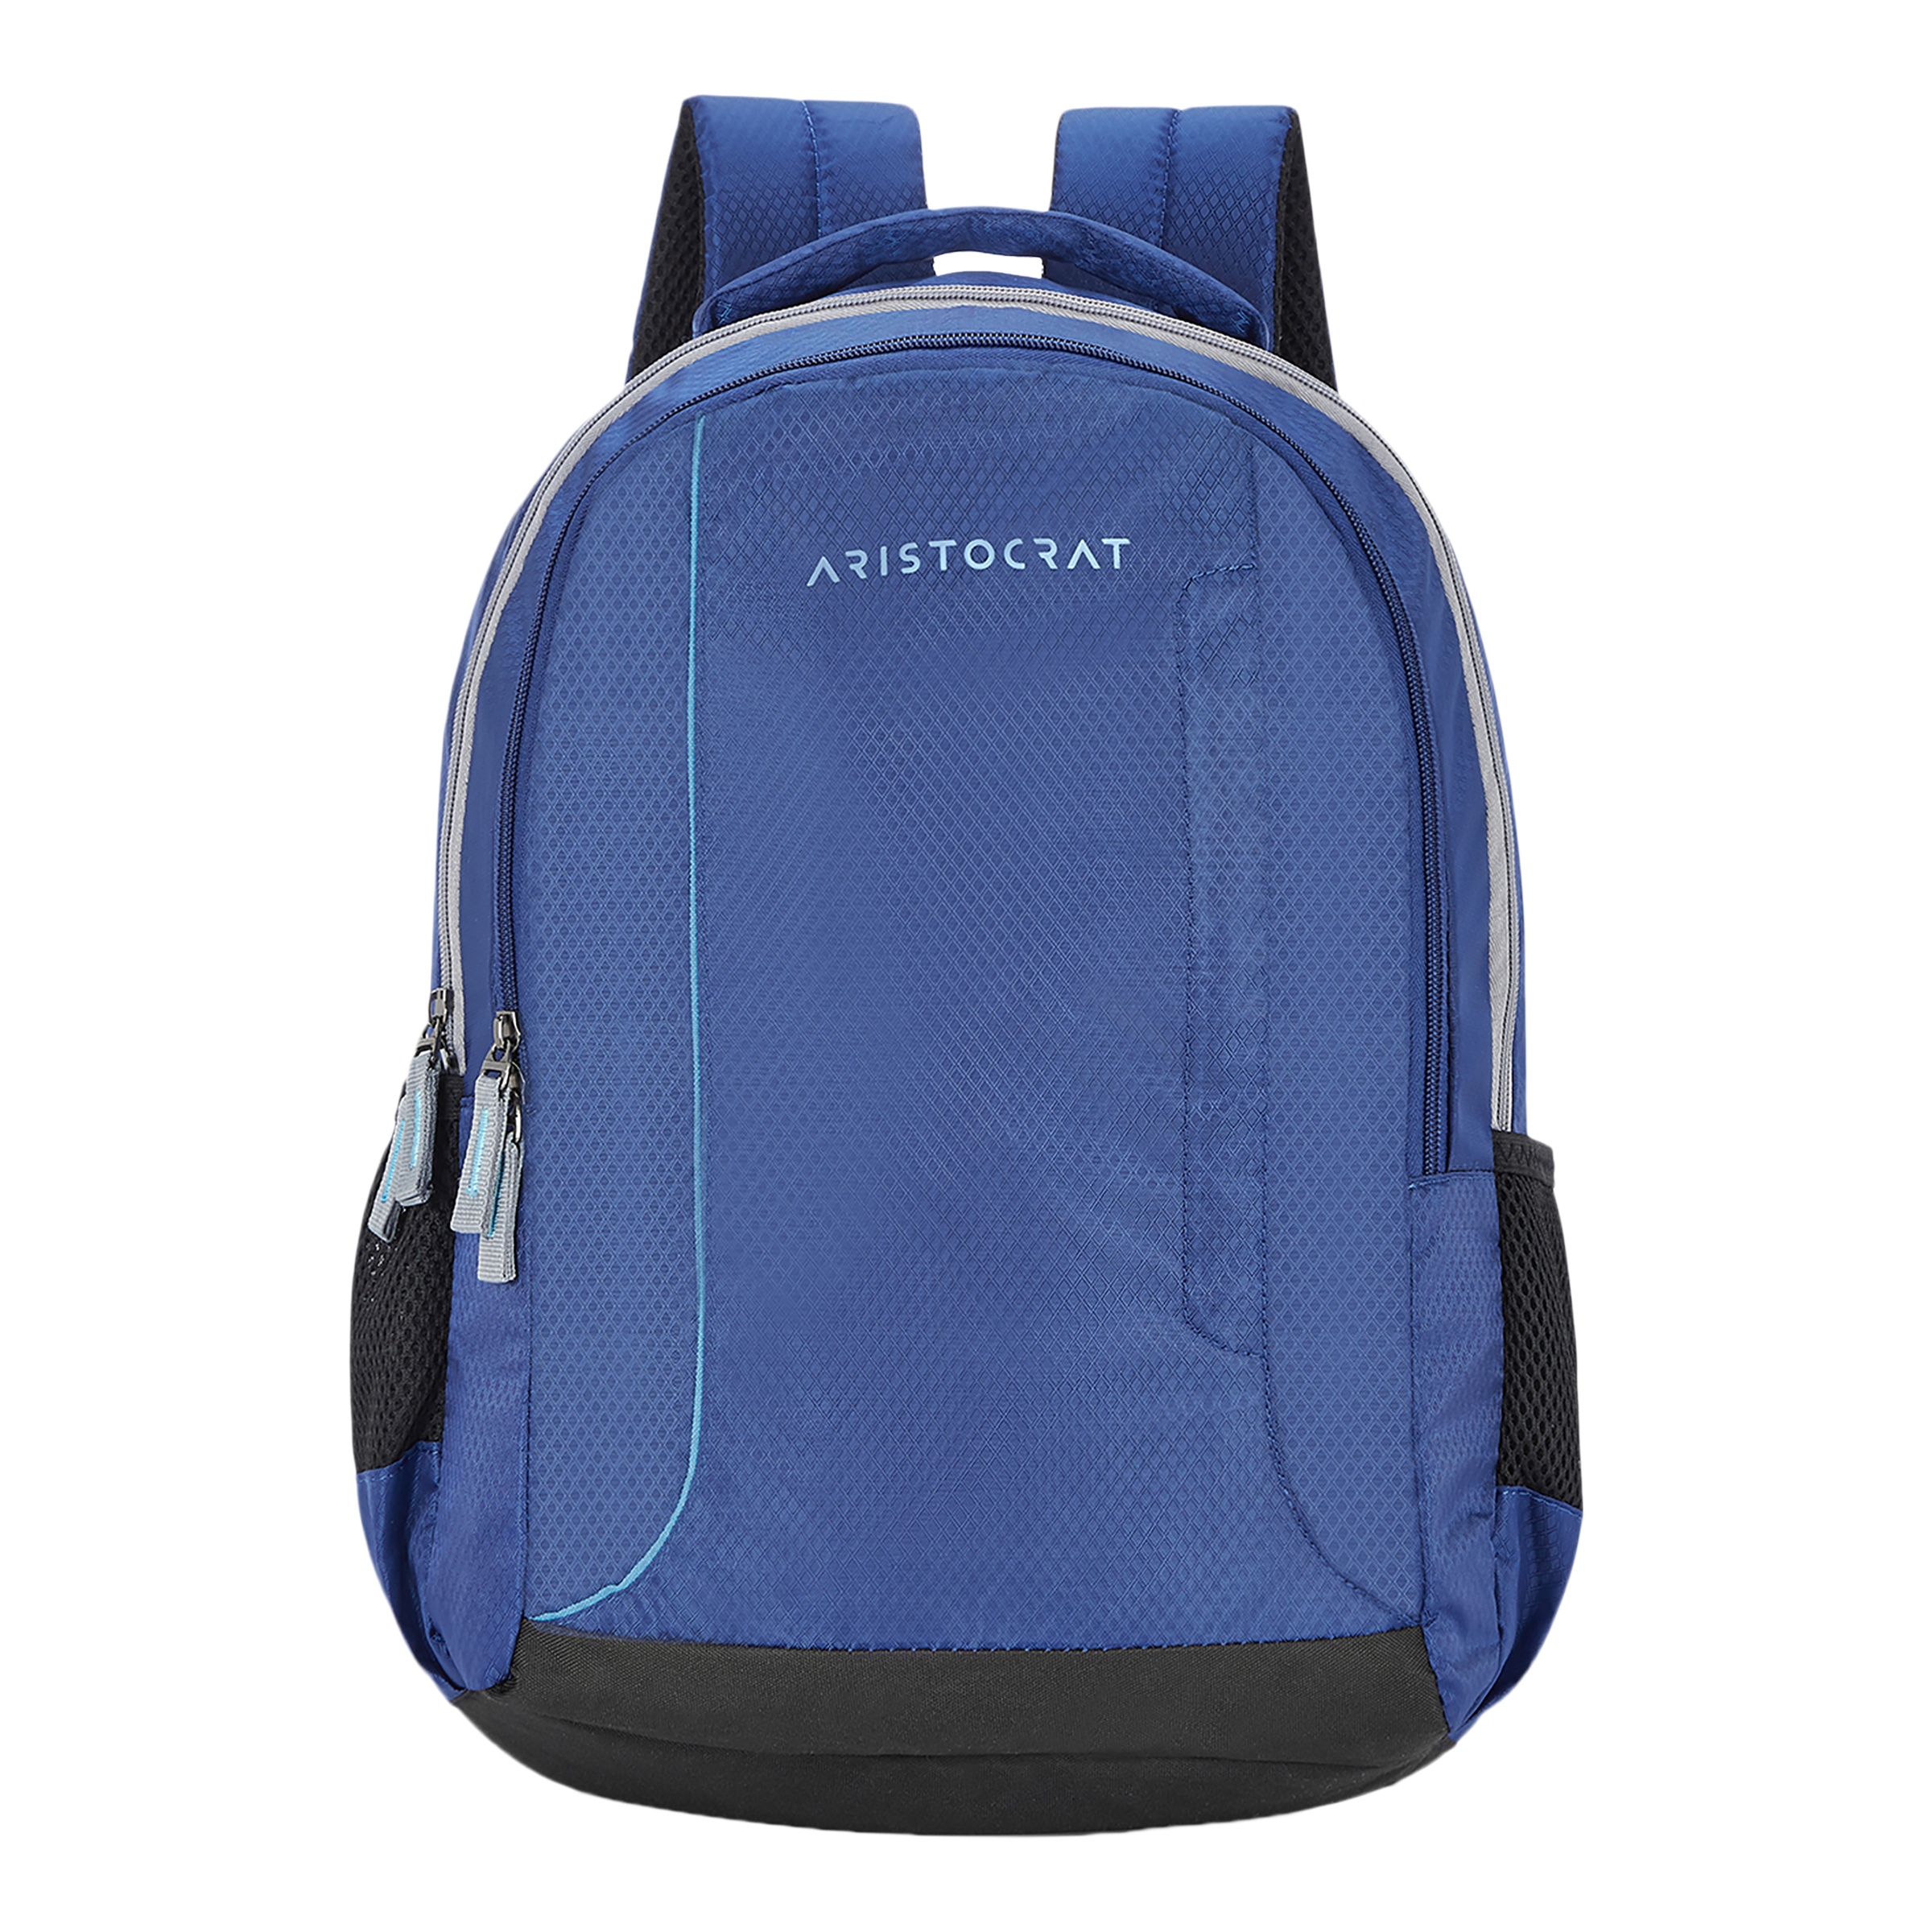 Aristocrat Backpacks - Buy Aristocrat Backpacks Online | Myntra